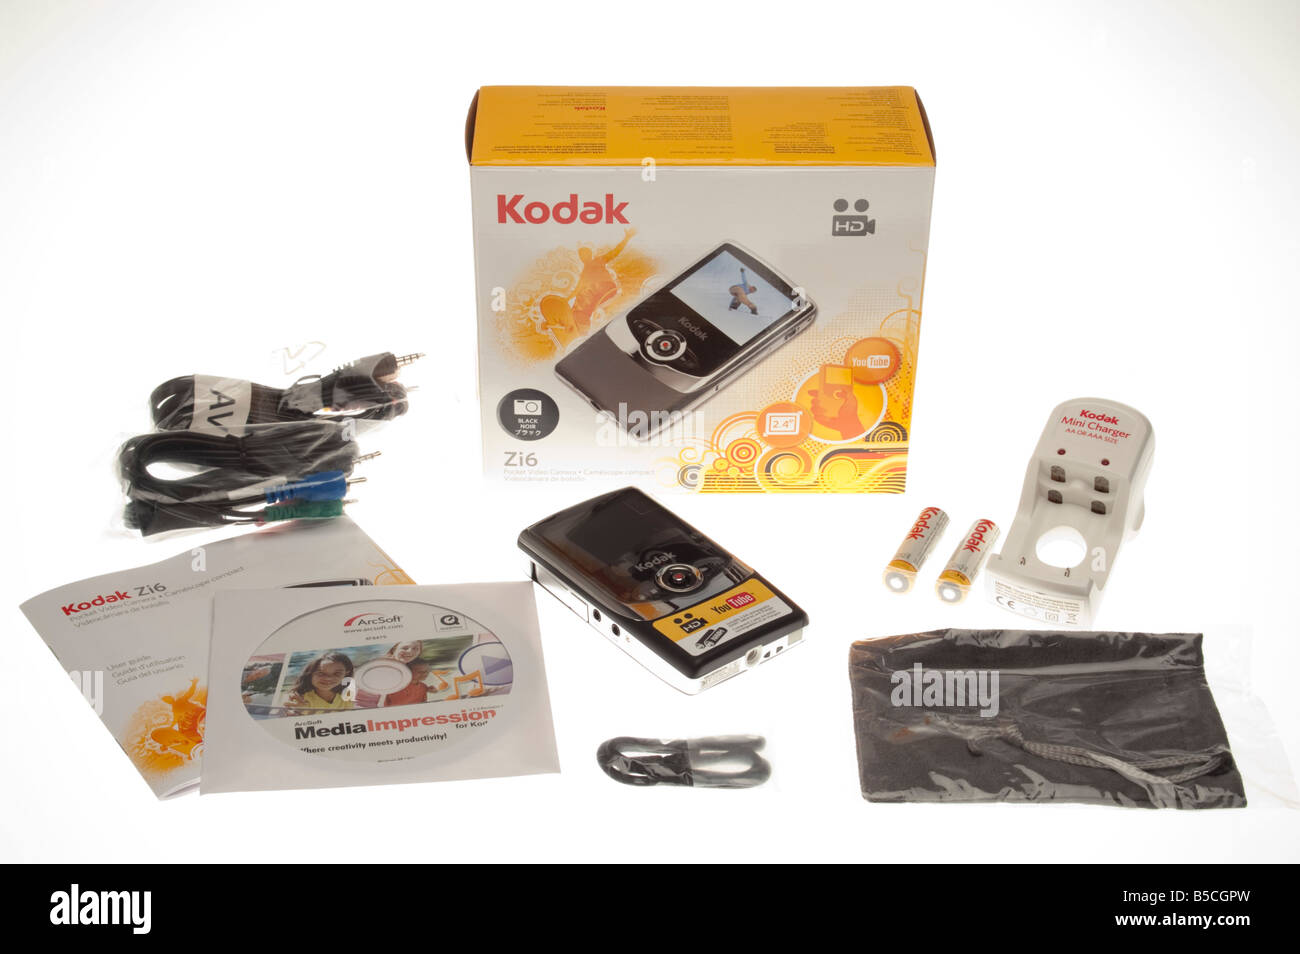 Kodak Zi6 HD 720p HDTV enregistreur portable appareil photo 2008 Banque D'Images